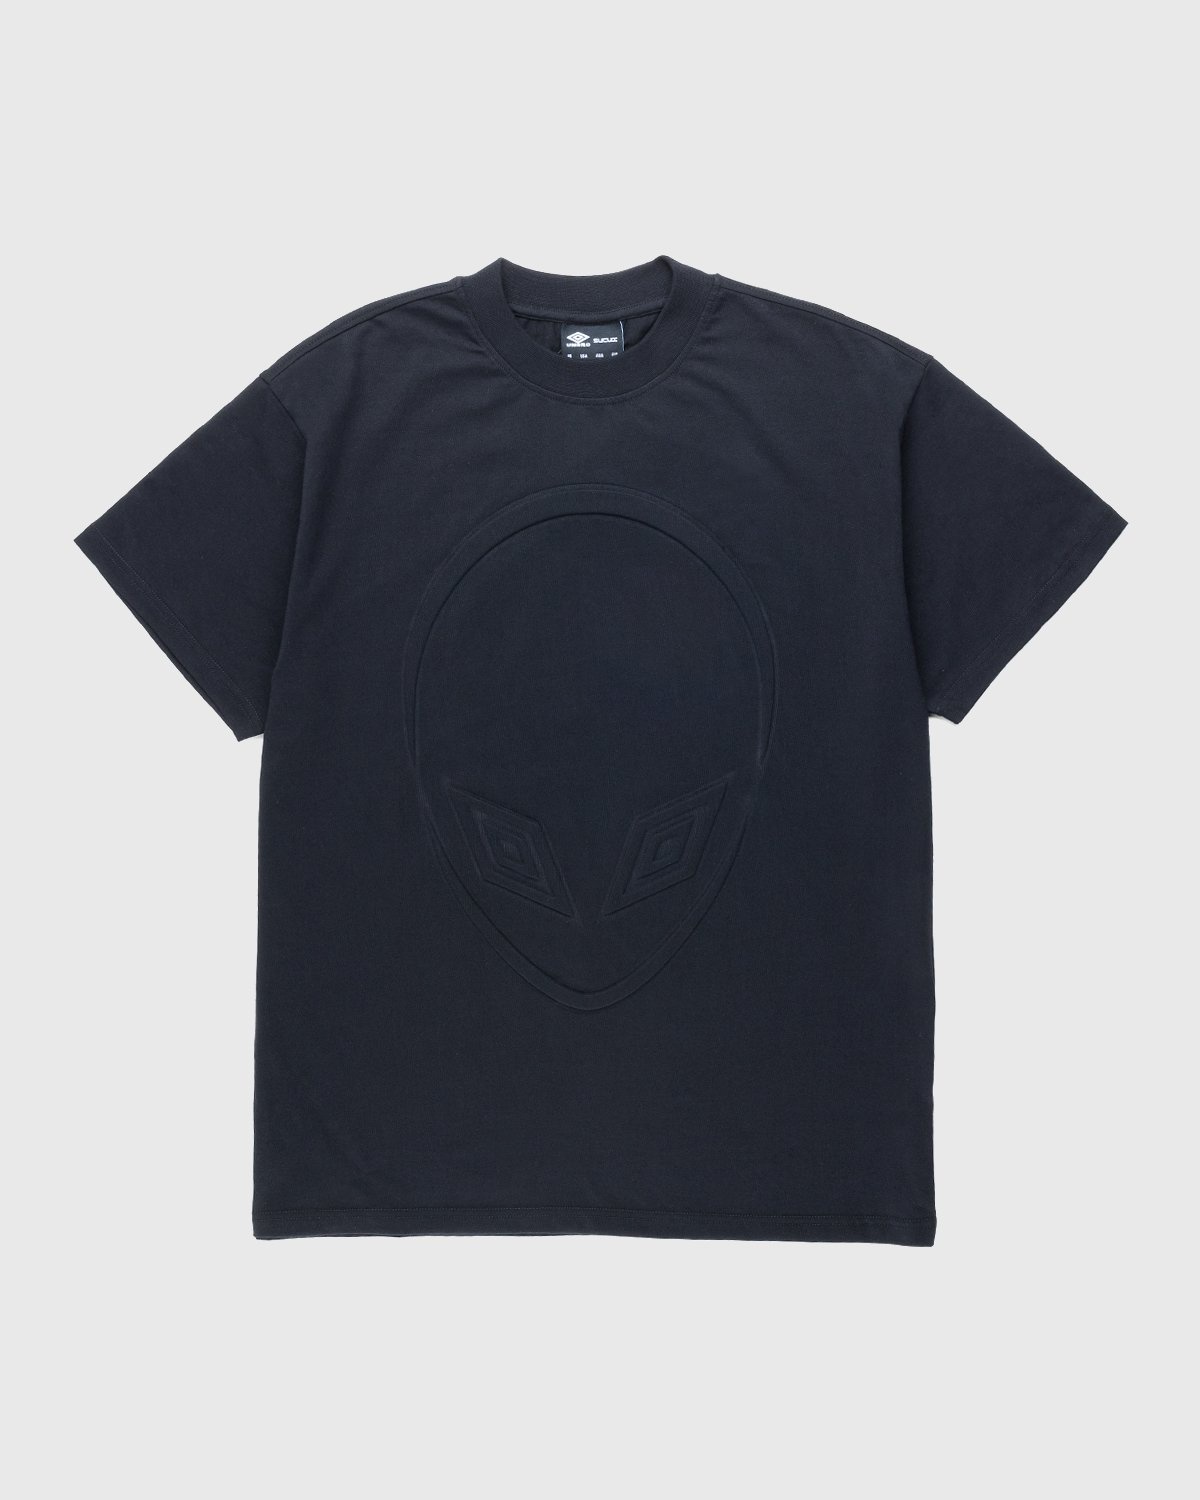 Umbro x Sucux – Oversize T-Shirt Black - T-Shirts - Black - Image 1